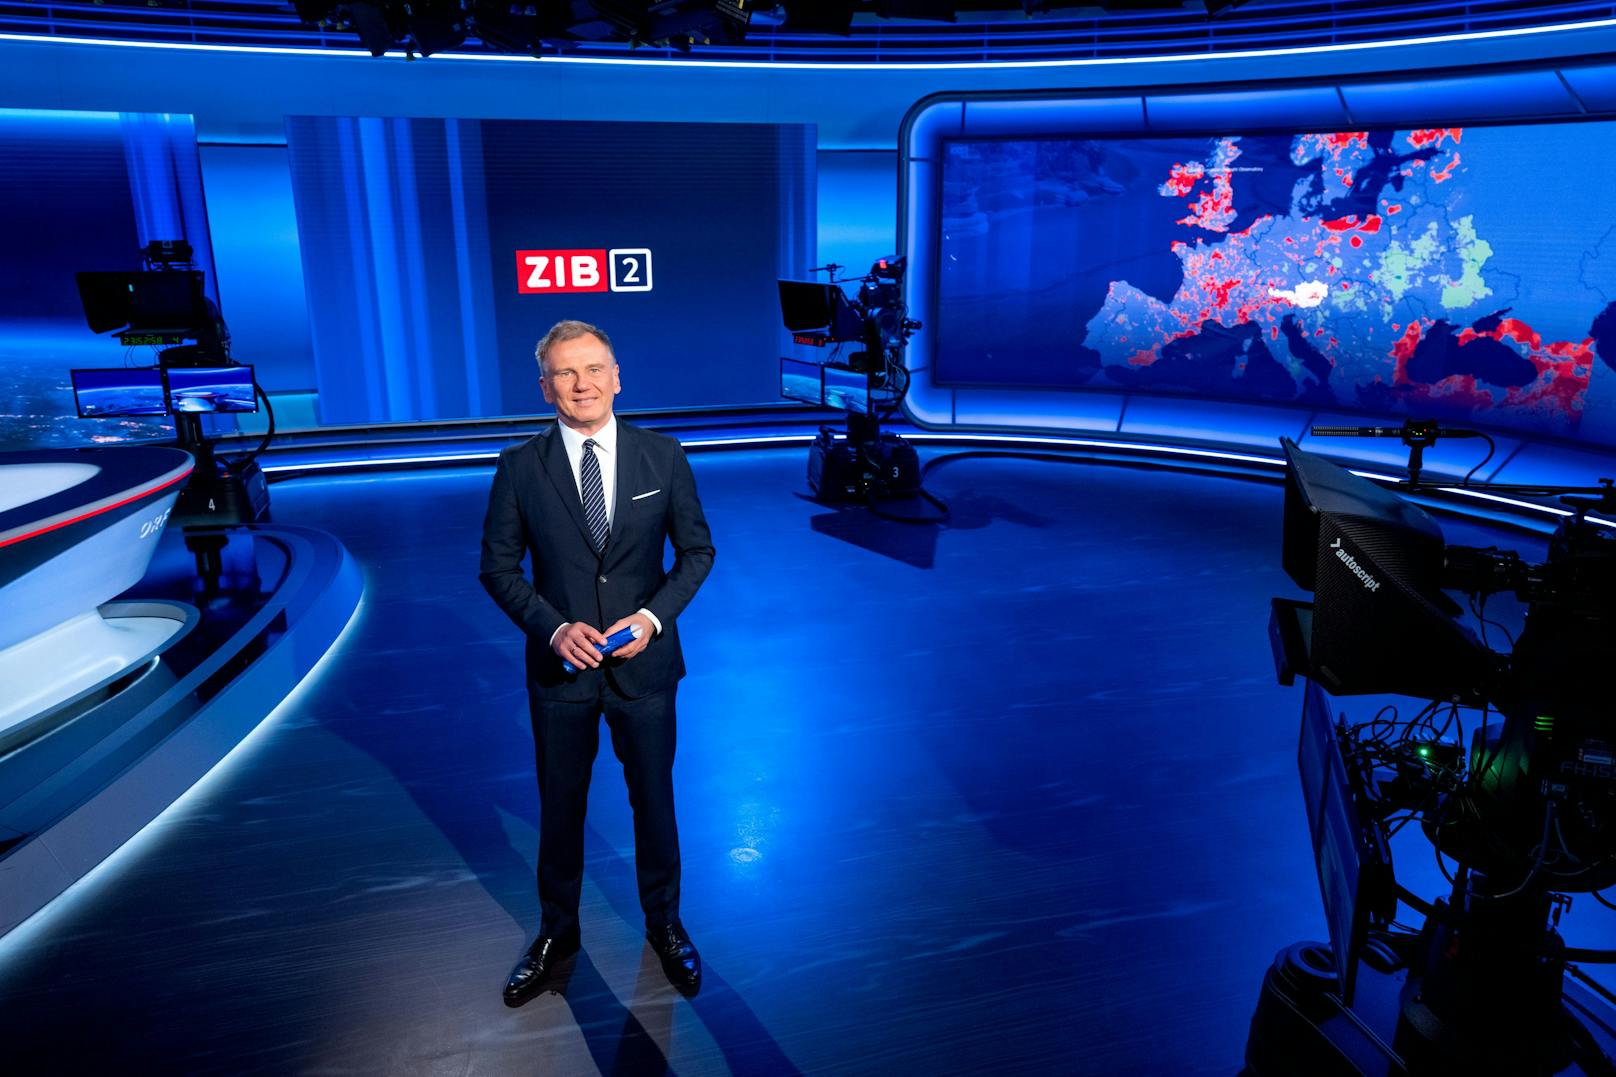 Armin Wolf sorgt nicht nur im ZIB2-Studio der ORF für Aufsehen. 